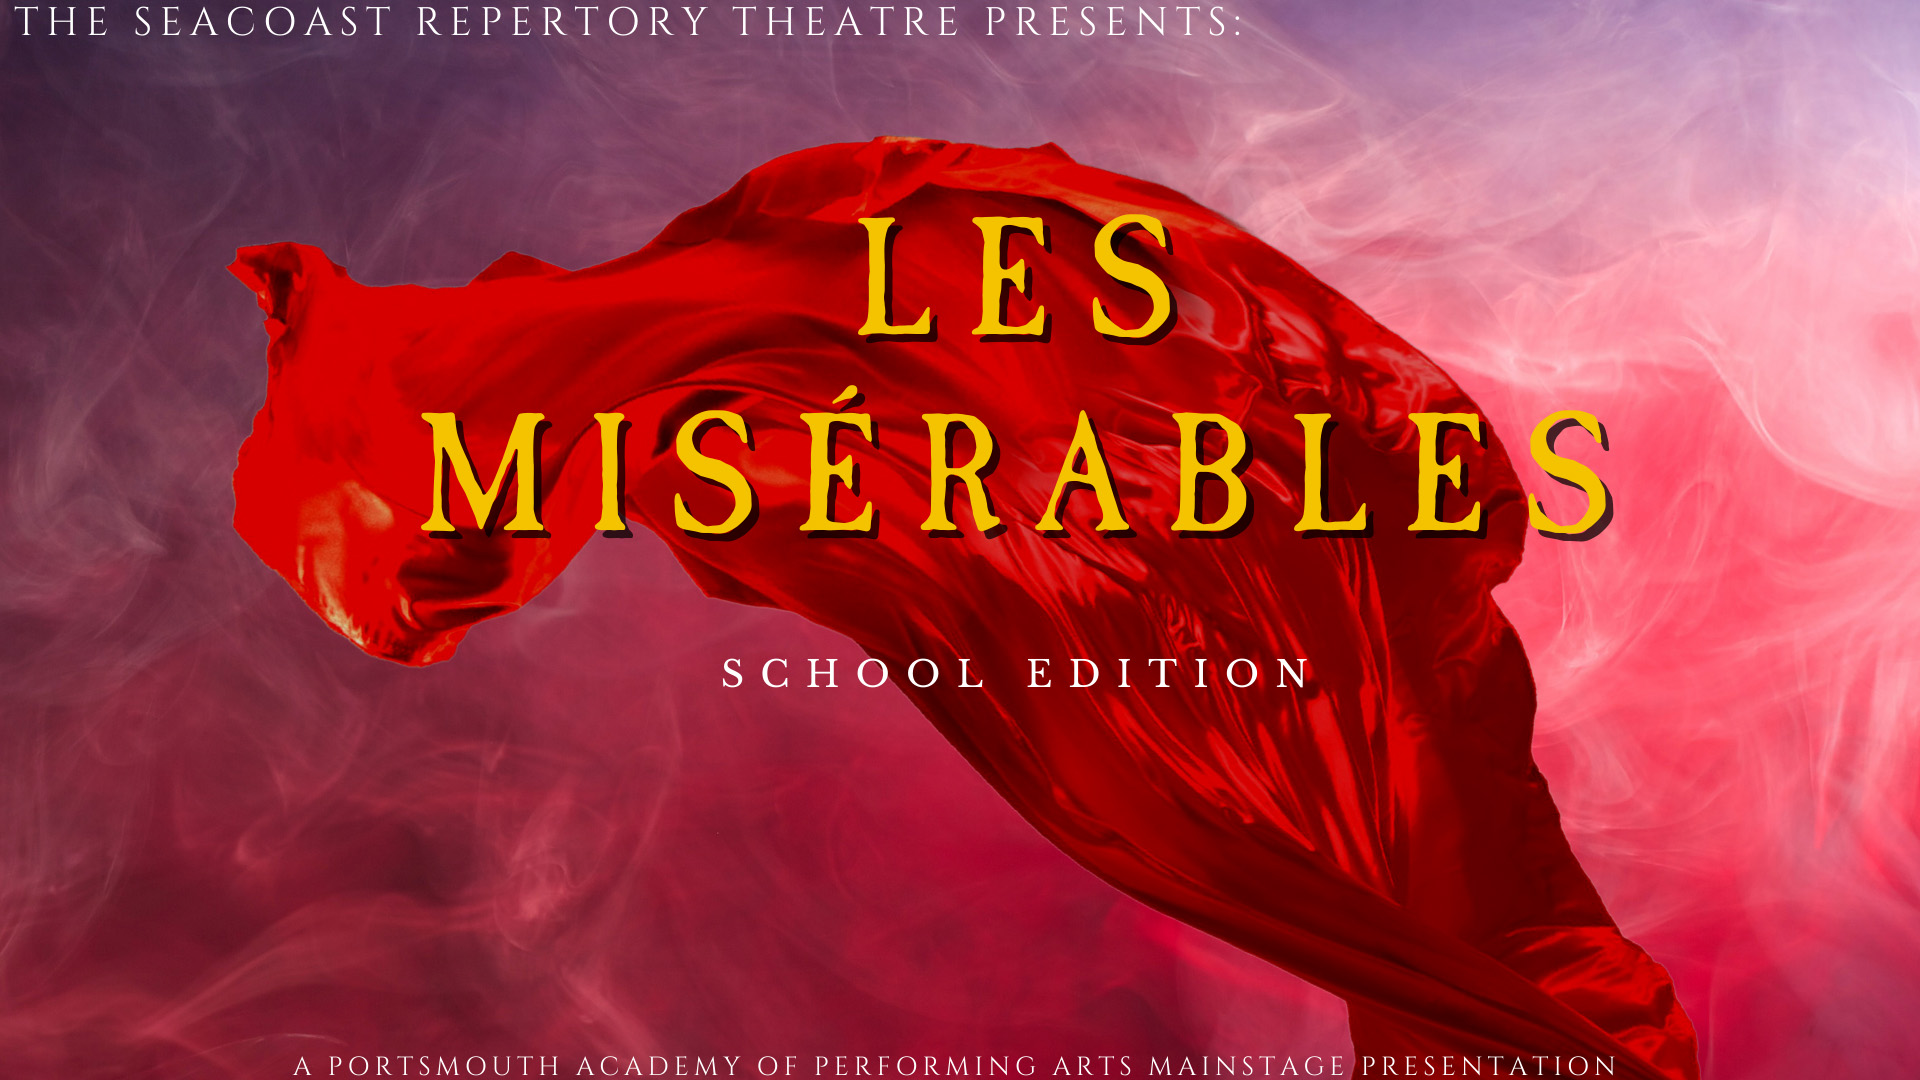 Les Misérables – School Edition